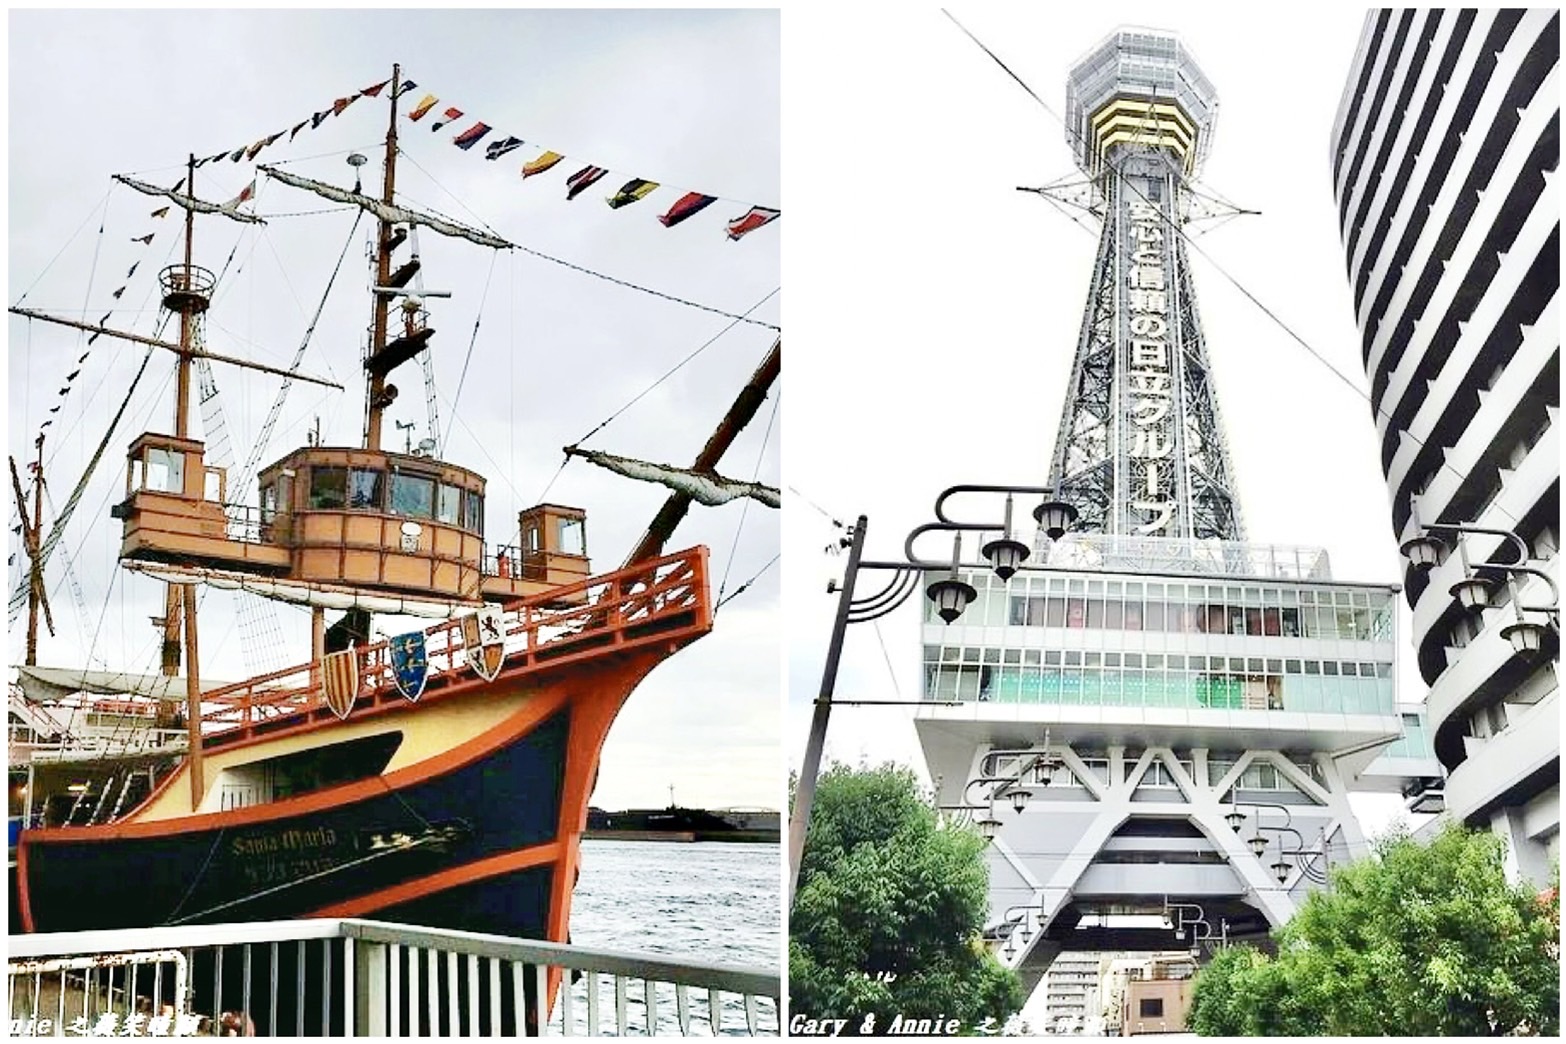 【大阪周遊卡景點】大阪周遊卡路線一日遊，聖瑪莉亞號觀光船、大阪生活今昔館